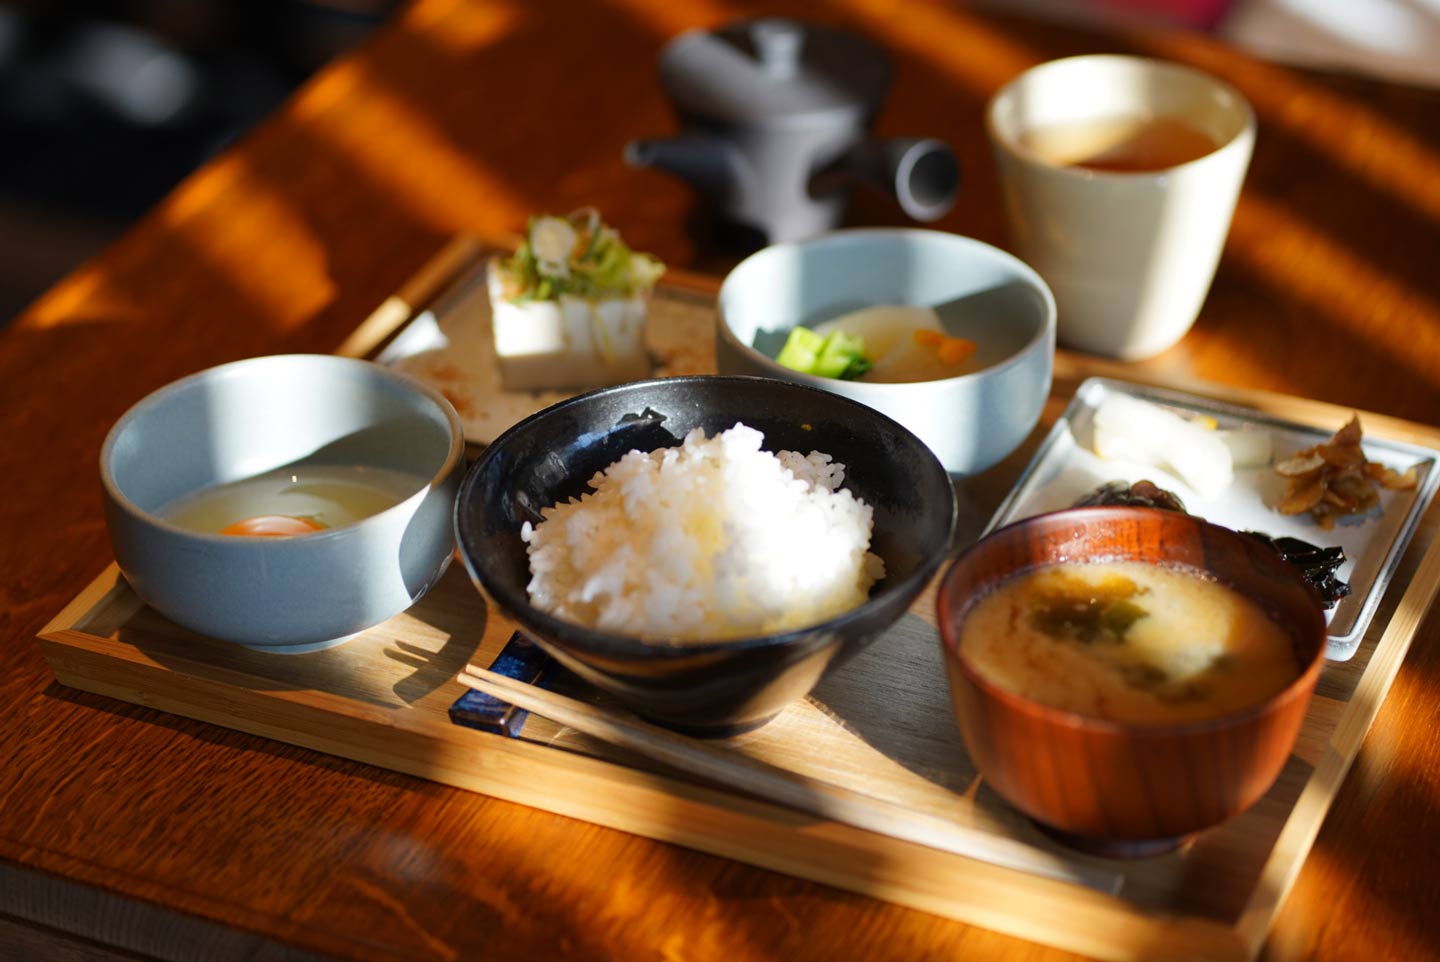 京都のモーニングにおすすめなお店25選! 人気の朝ごはんを和食・洋食で紹介